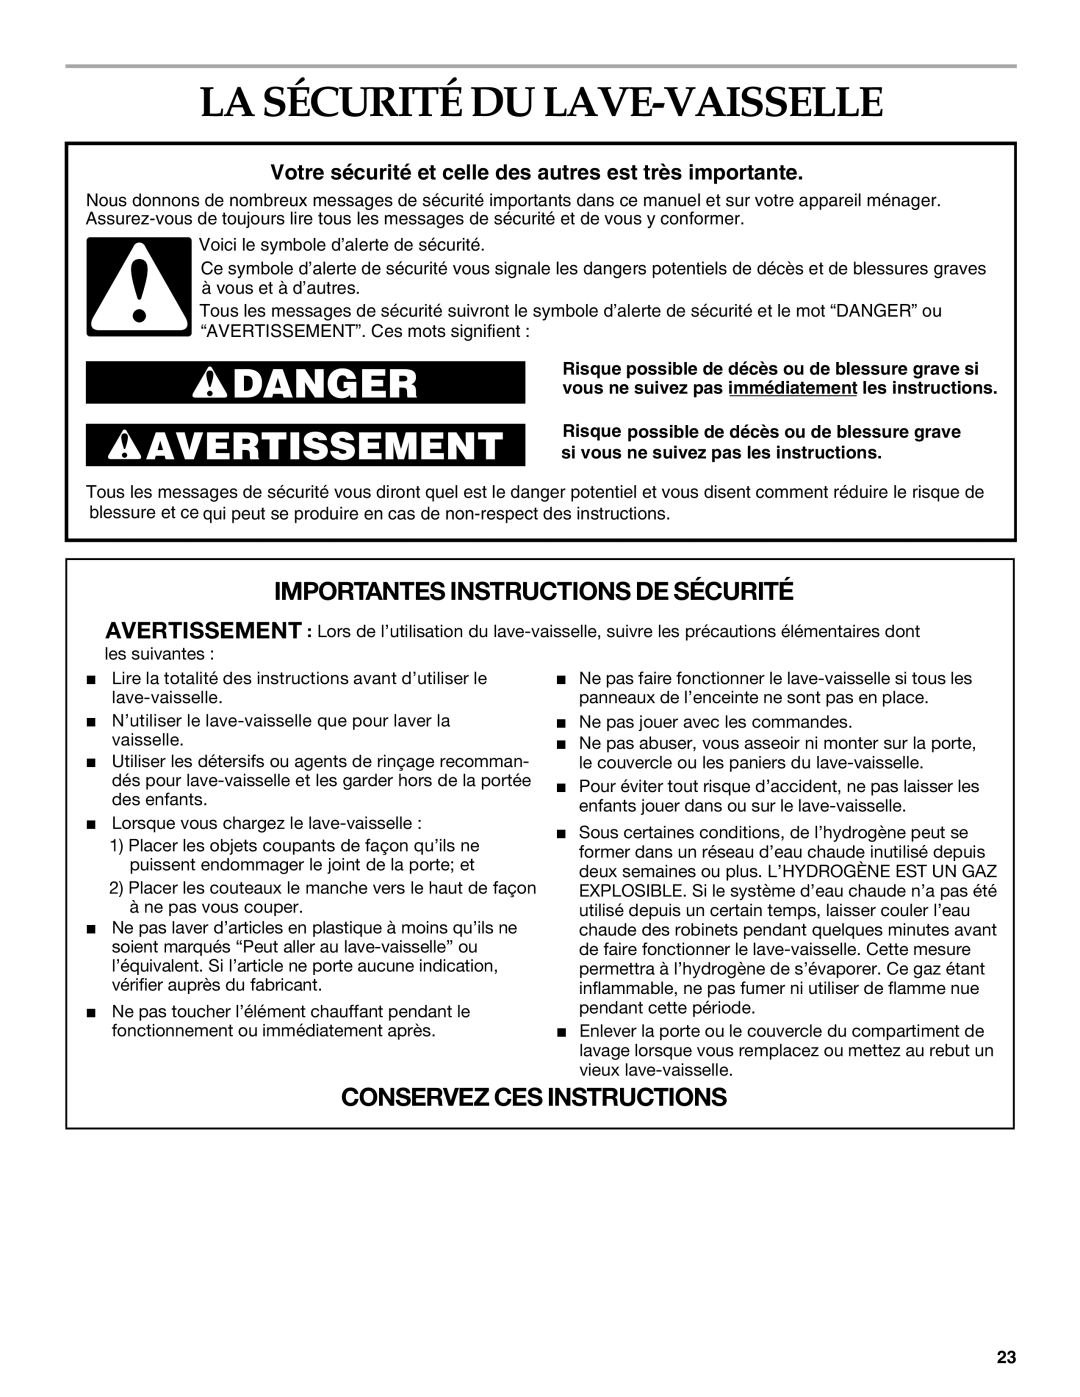 KitchenAid KUDS01VM manual La Sécurité Du Lave-Vaisselle, Votre sécurité et celle des autres est très importante, Danger 